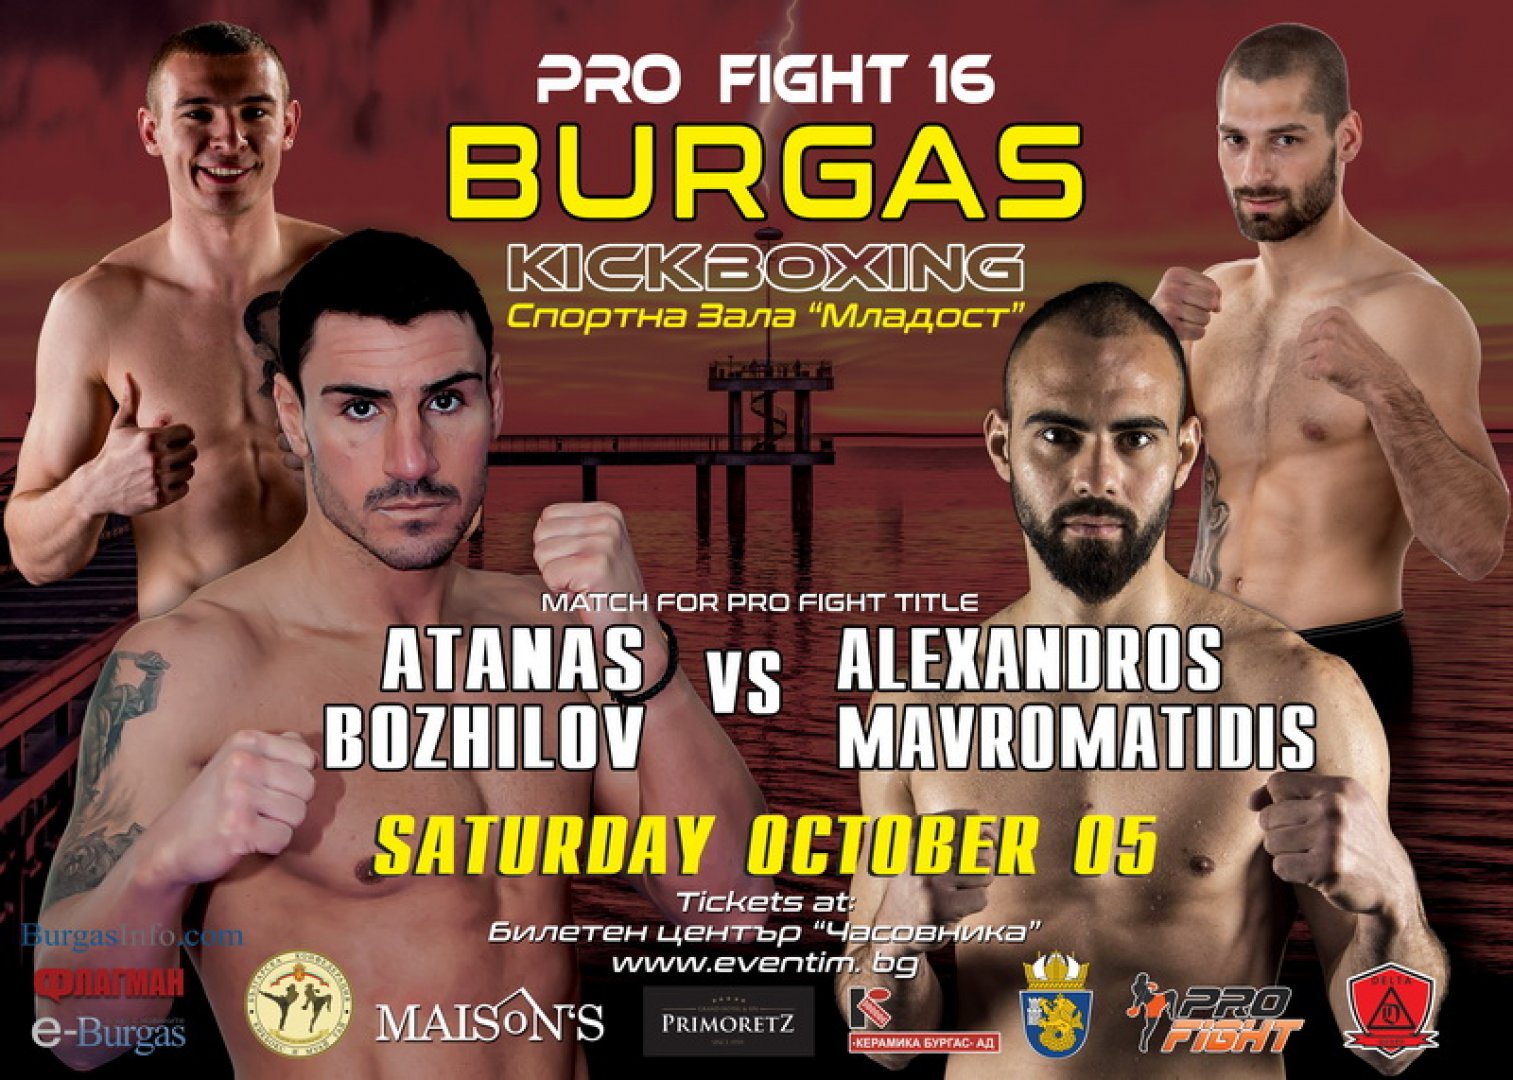 Коланът на Pro fight 16 - следващото предизвикателство пред Атанас Божилов  - E-Burgas.com